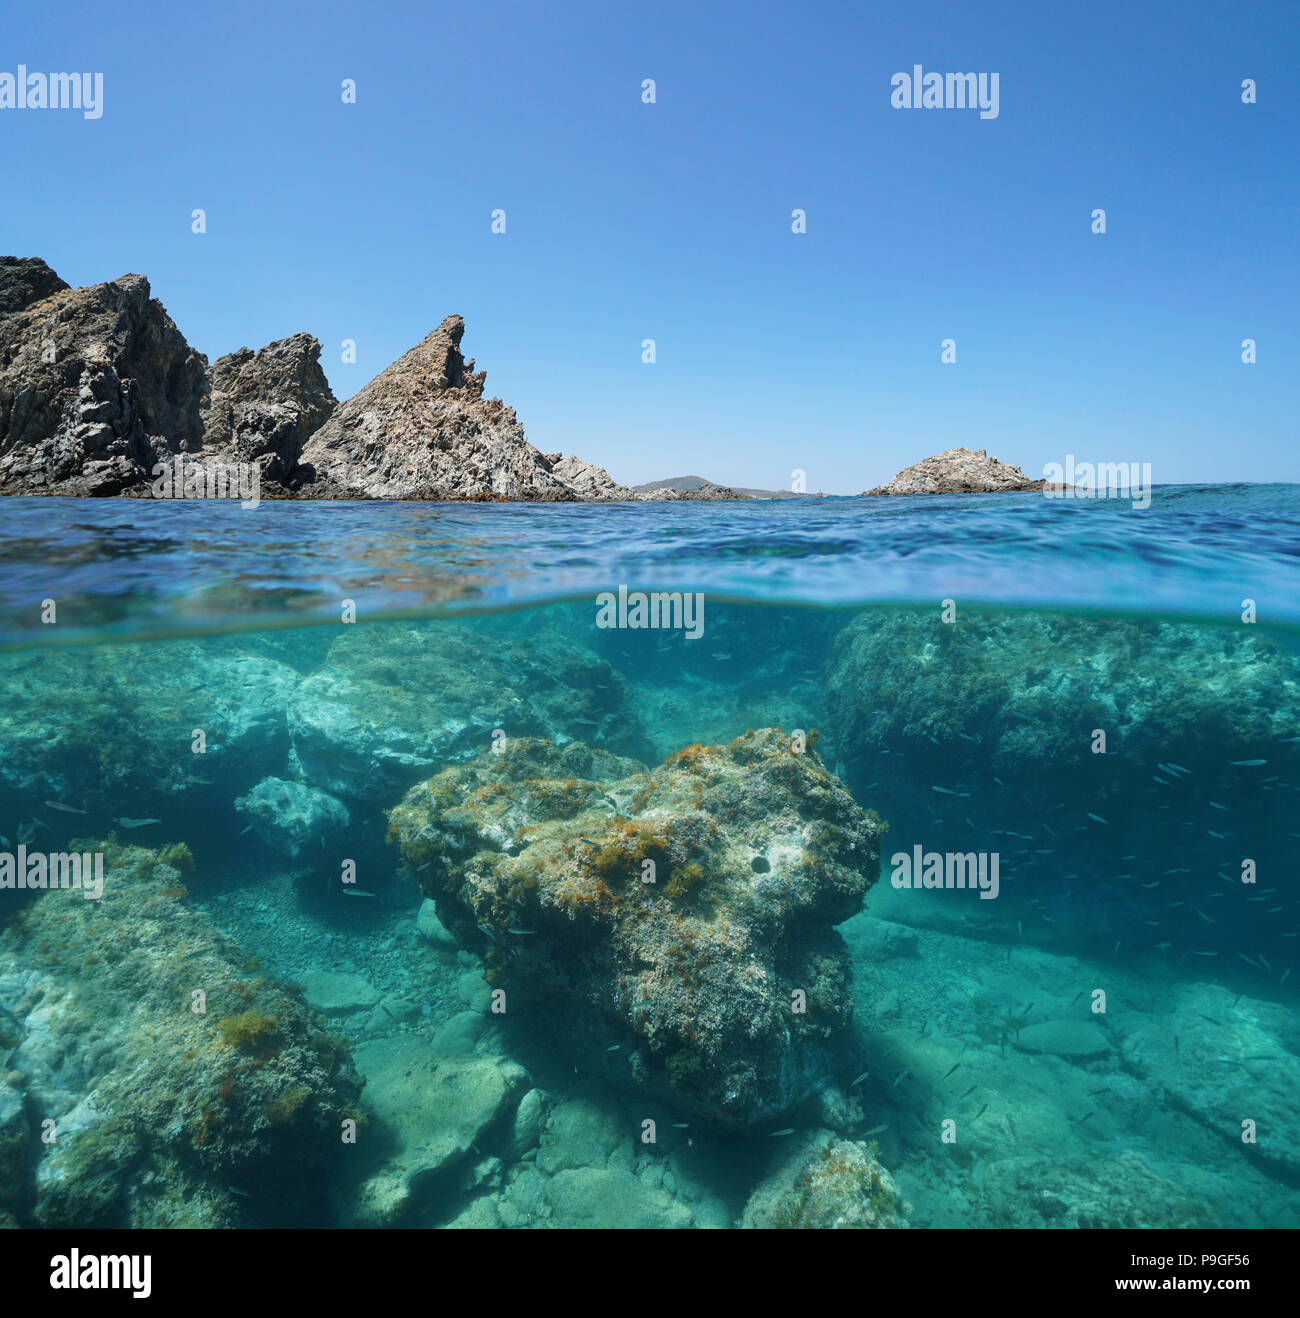 Felsige Küste mit Felsen unter Wasser, geteilte Ansicht oberhalb und unterhalb der Oberfläche, Mittelmeer, Marine Reserve von Banyuls Cerbere, Frankreich Stockfoto